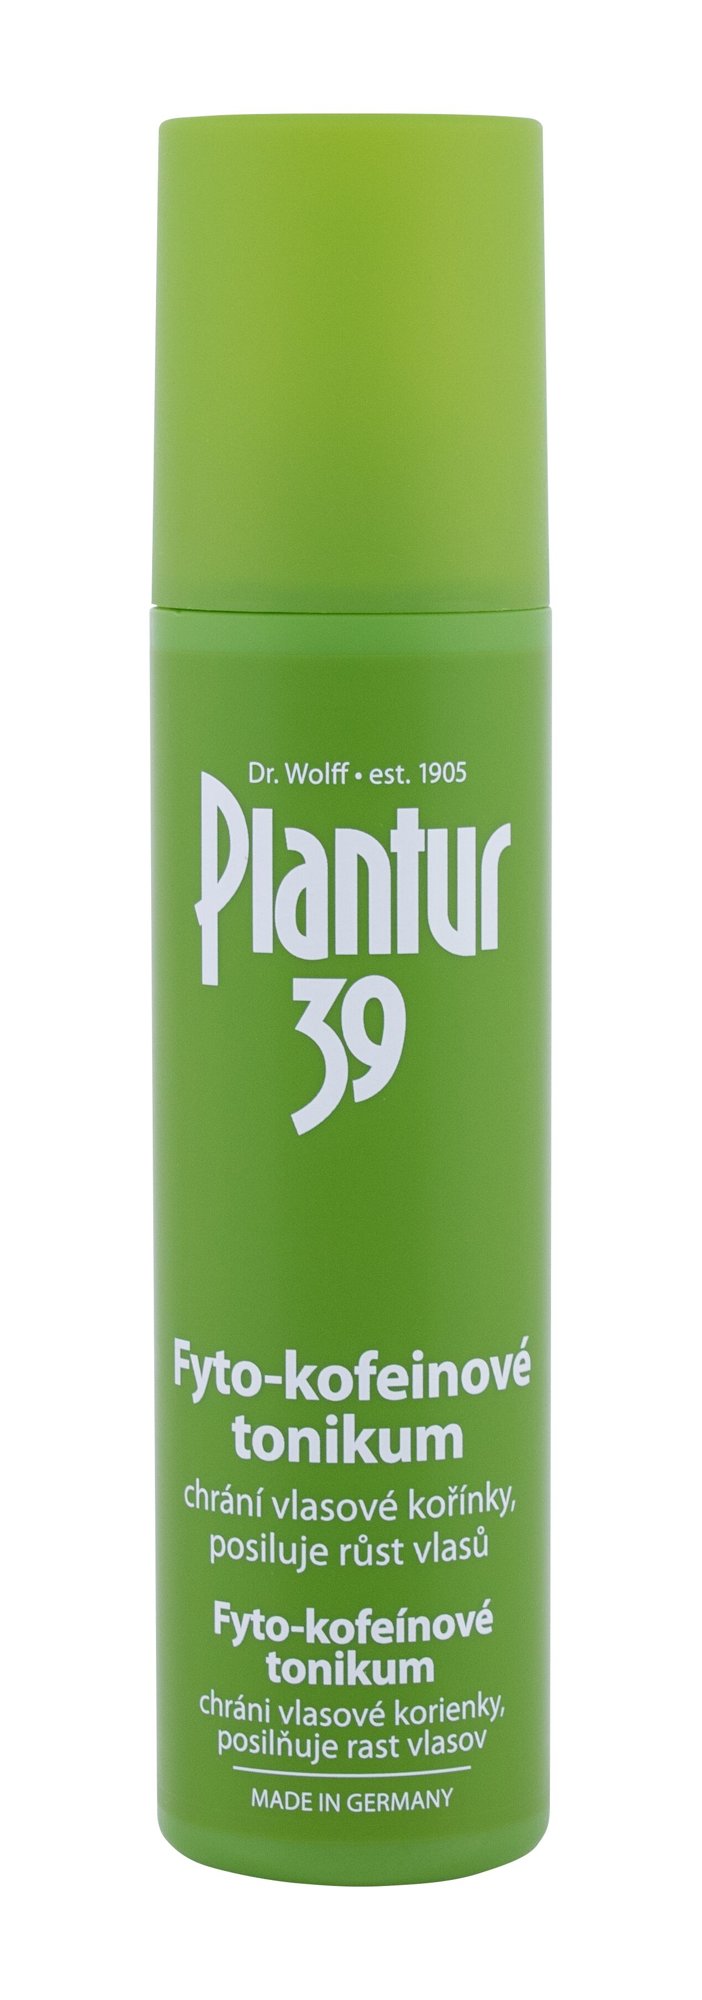 Plantur 39 Phyto-Coffein Tonic priemonė nuo plaukų slinkimo